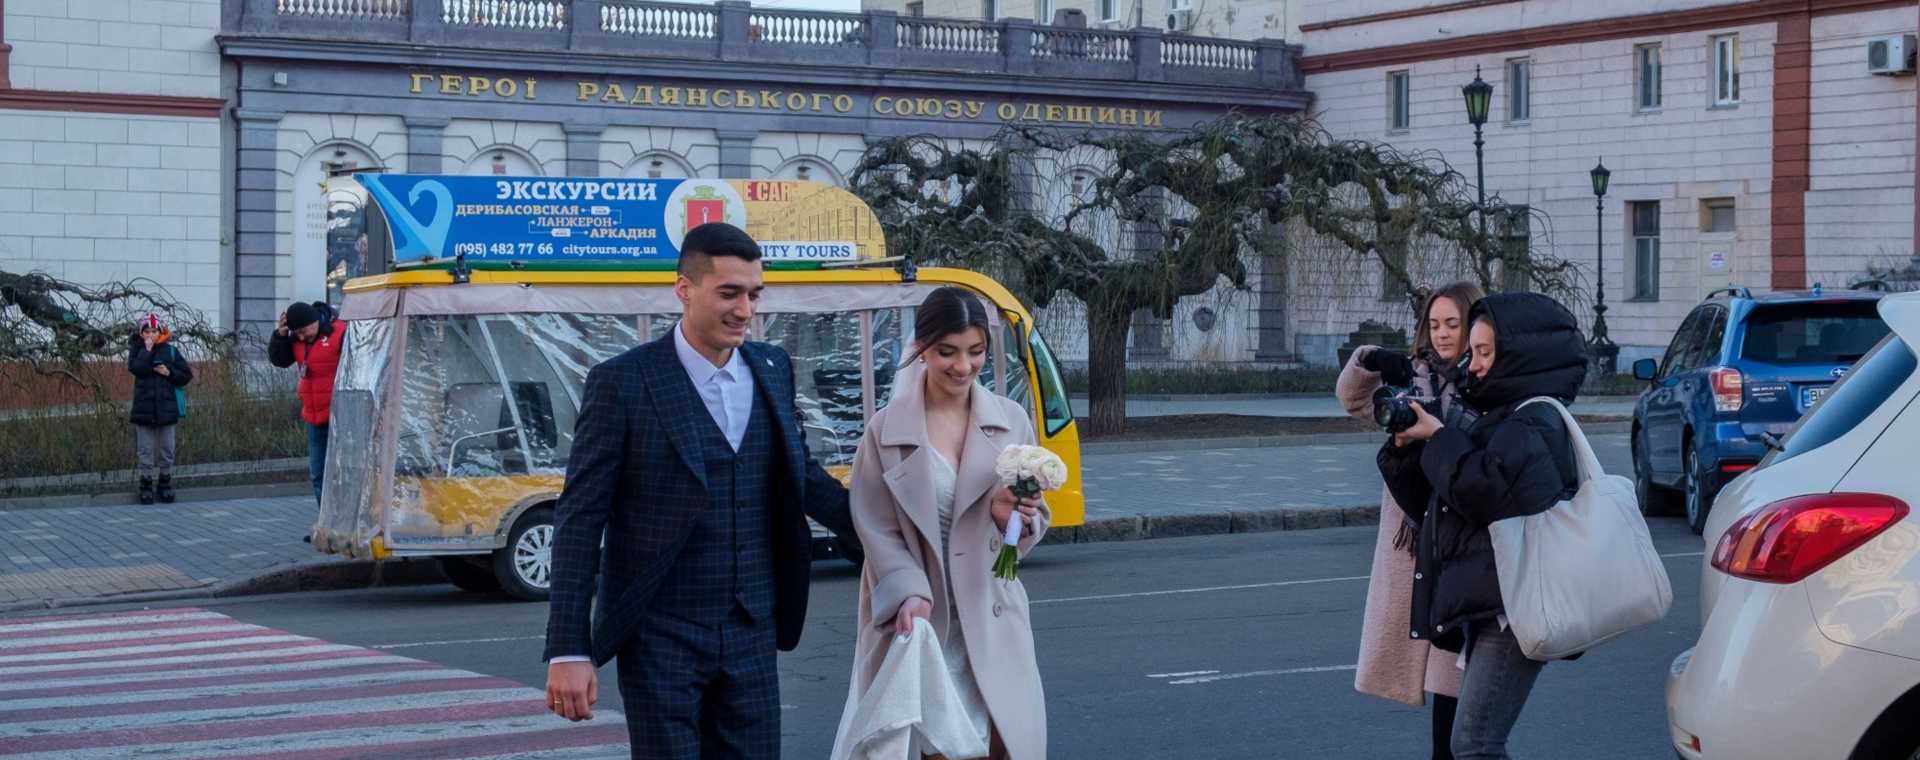 Pejalan kaki mengambil foto pasangan yang baru menikah menyeberang jalan di Odessa, Ukraina, pada Sabtu (22/1/2022). - Bloomberg/Christopher Occhicone